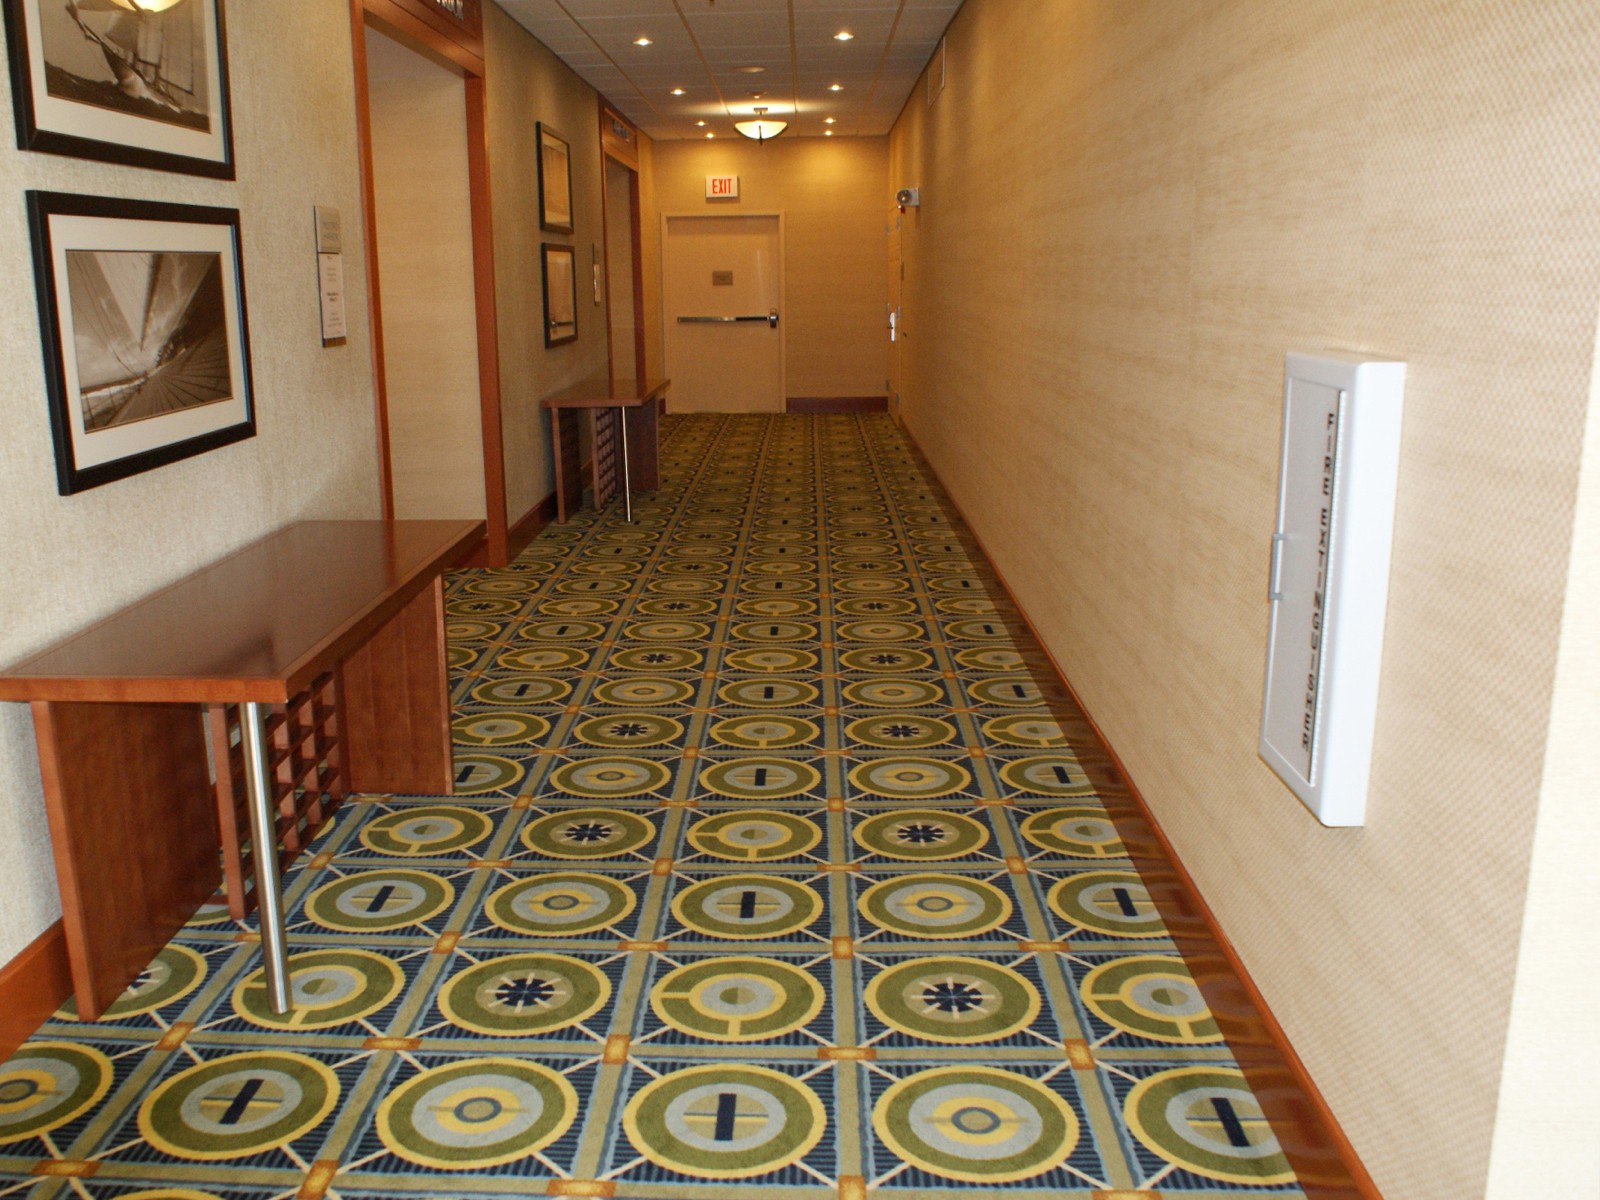 Hilton Garden Inn | Flooring Installation System